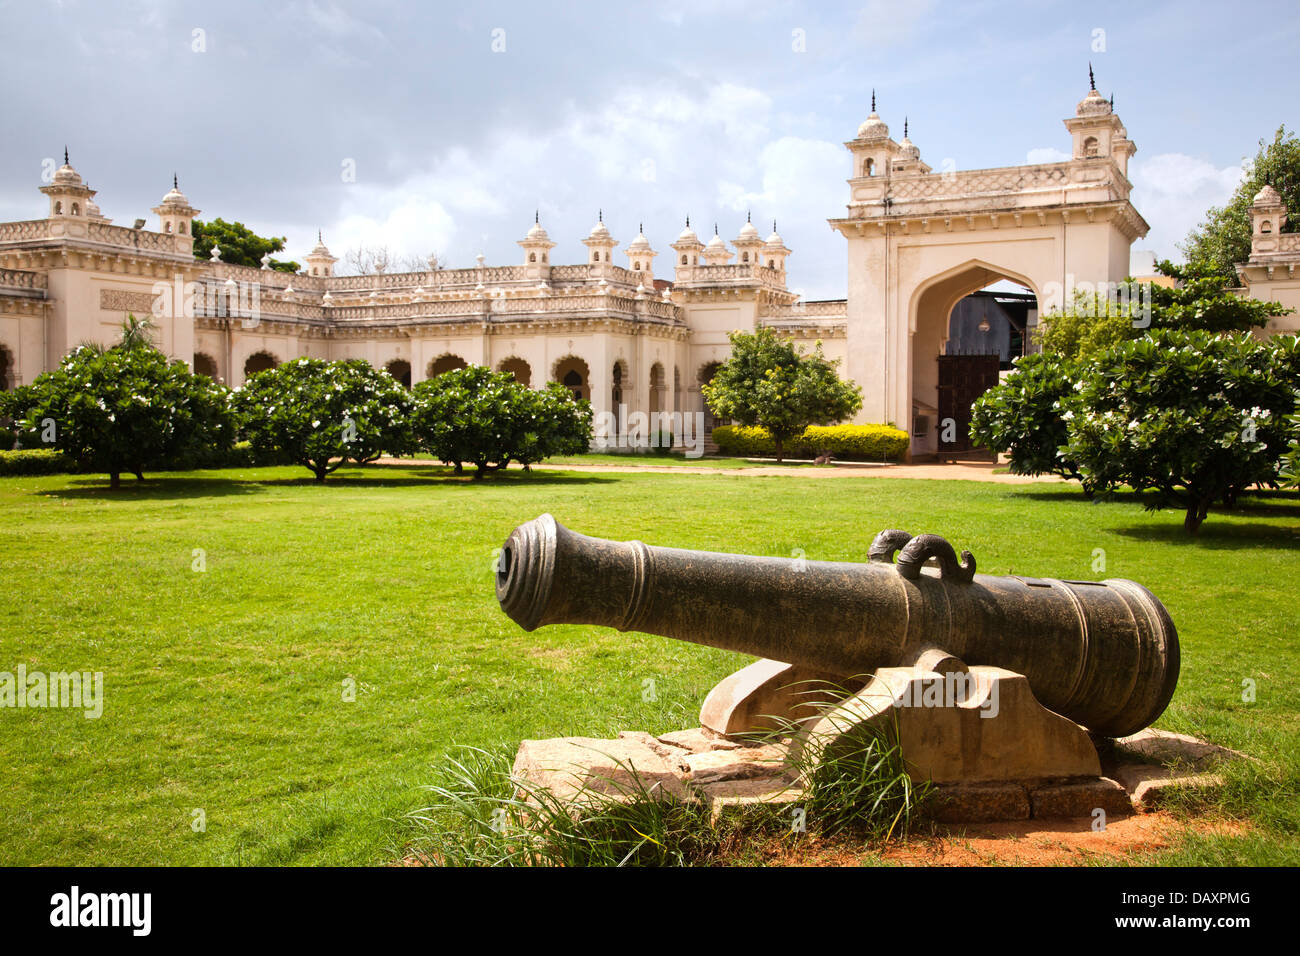 Cannon dans la pelouse avec palace dans l'arrière-plan, Chowmahalla Palace, Hyderabad, Andhra Pradesh, Inde Banque D'Images